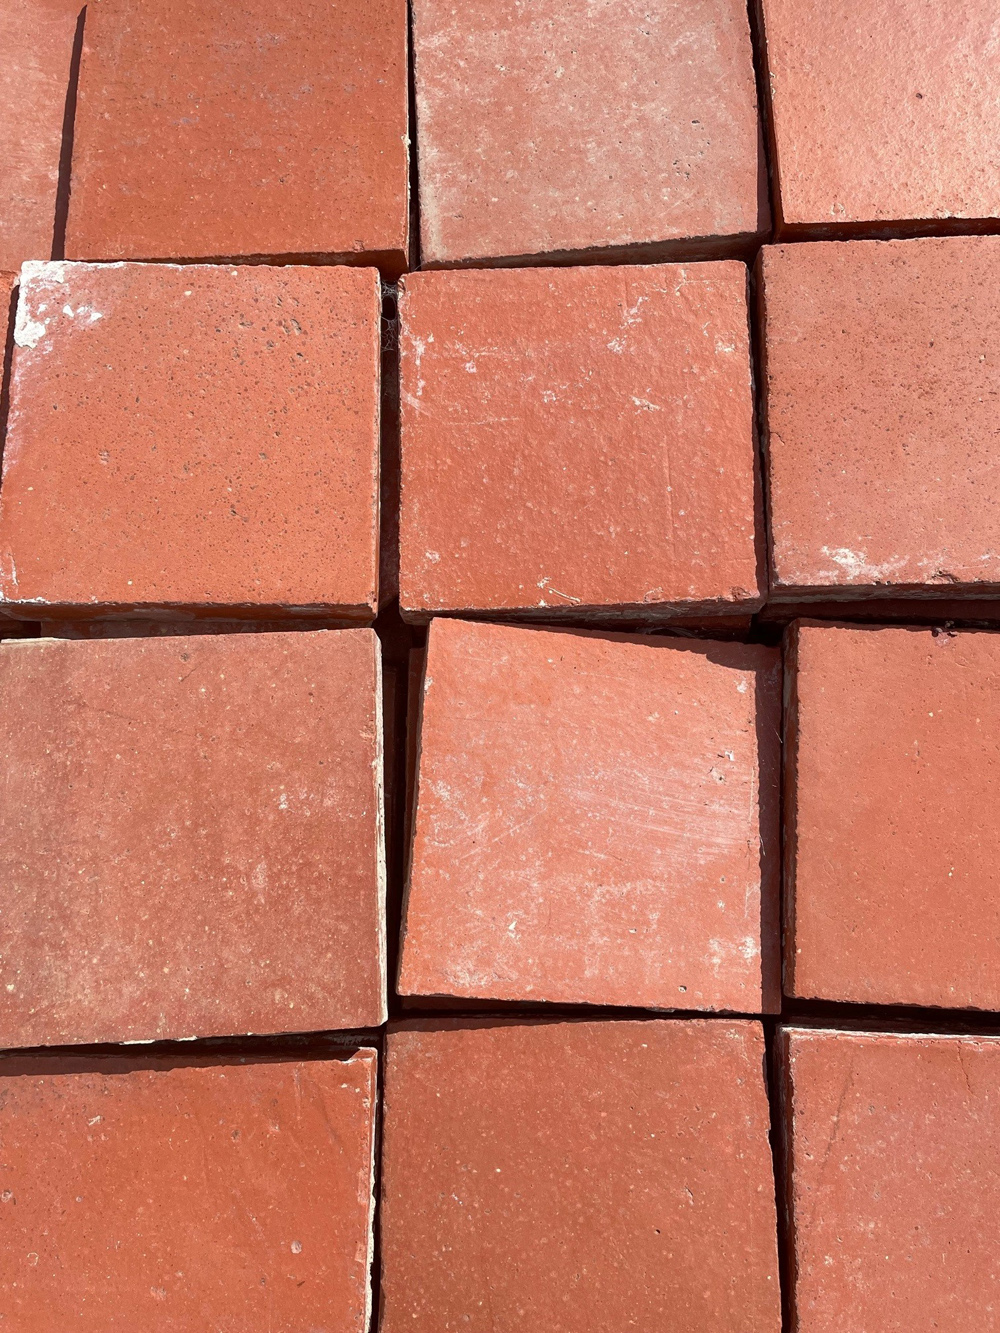 6 inch quarry tiles 2 | Six Inch Quarry Tiles